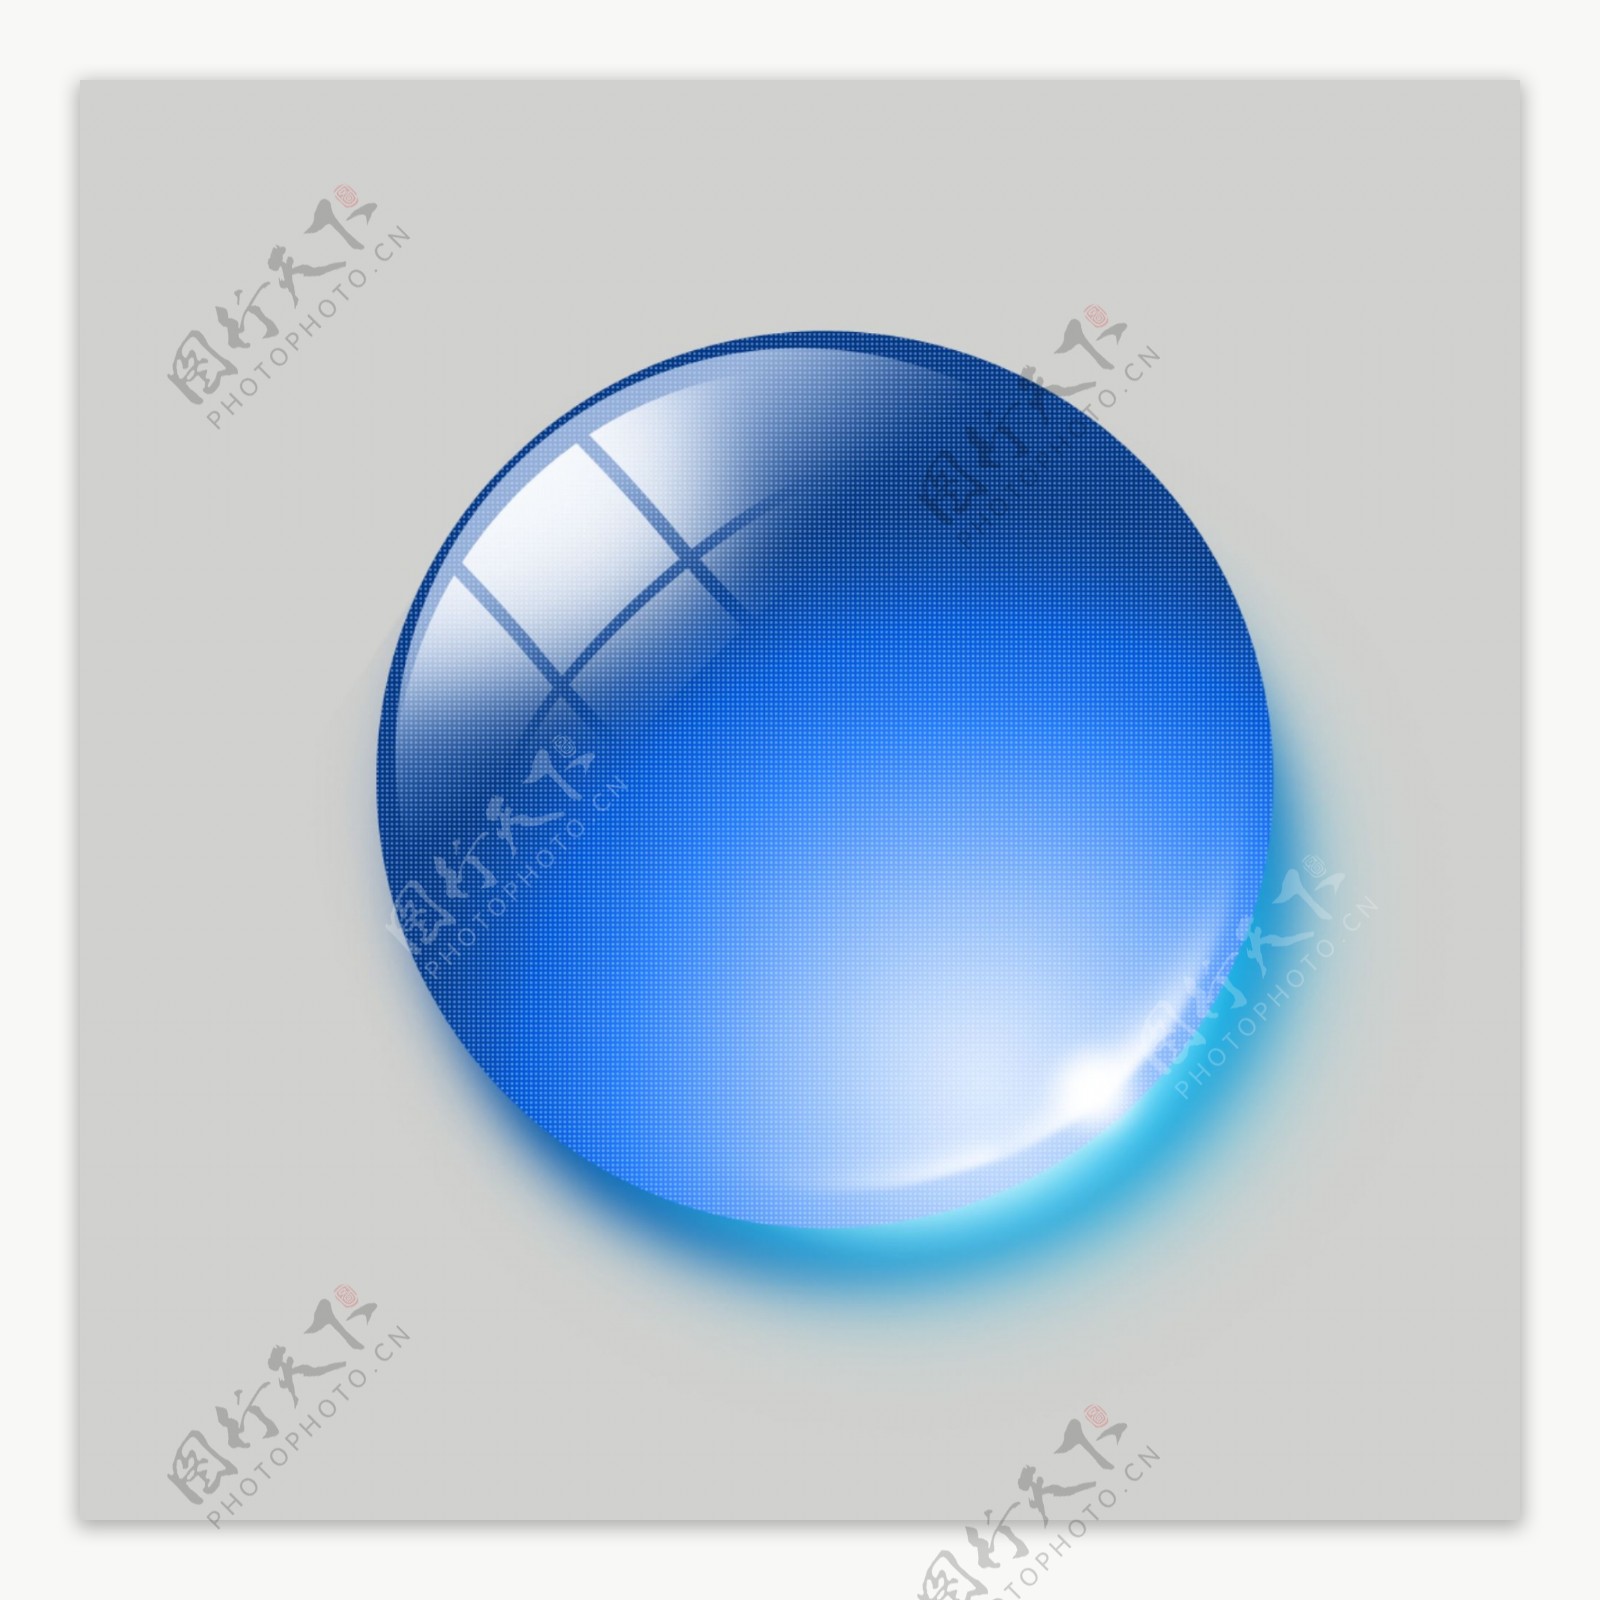 高清质感蓝色透明水晶球图片